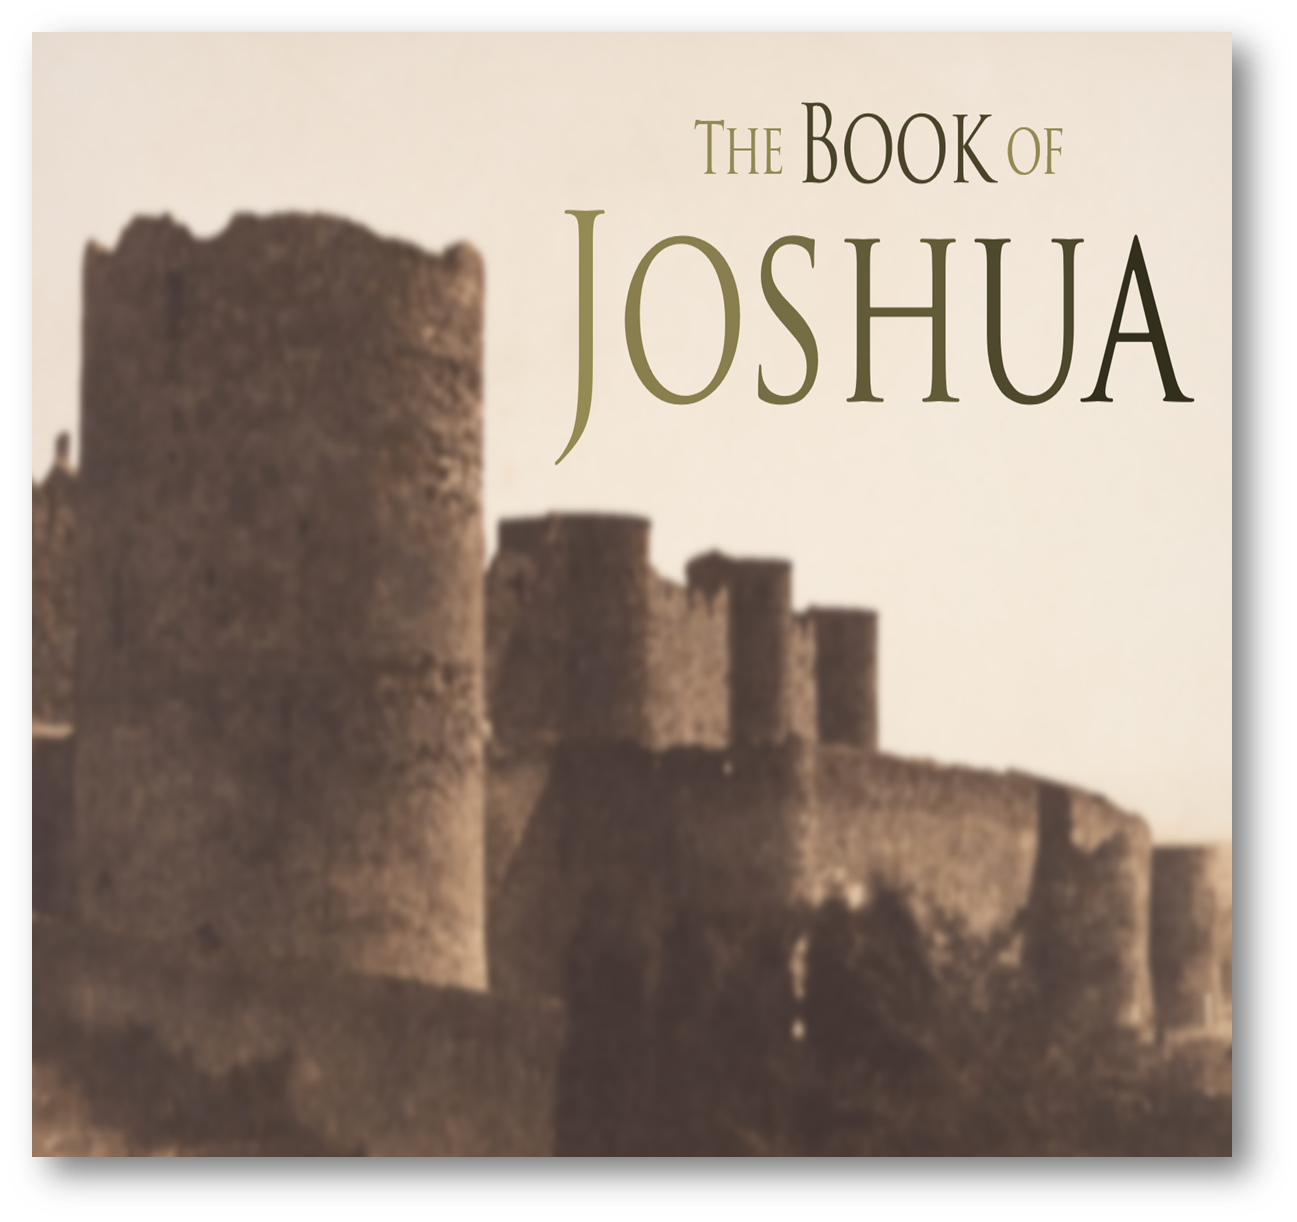 Yehoshua (Joshua)